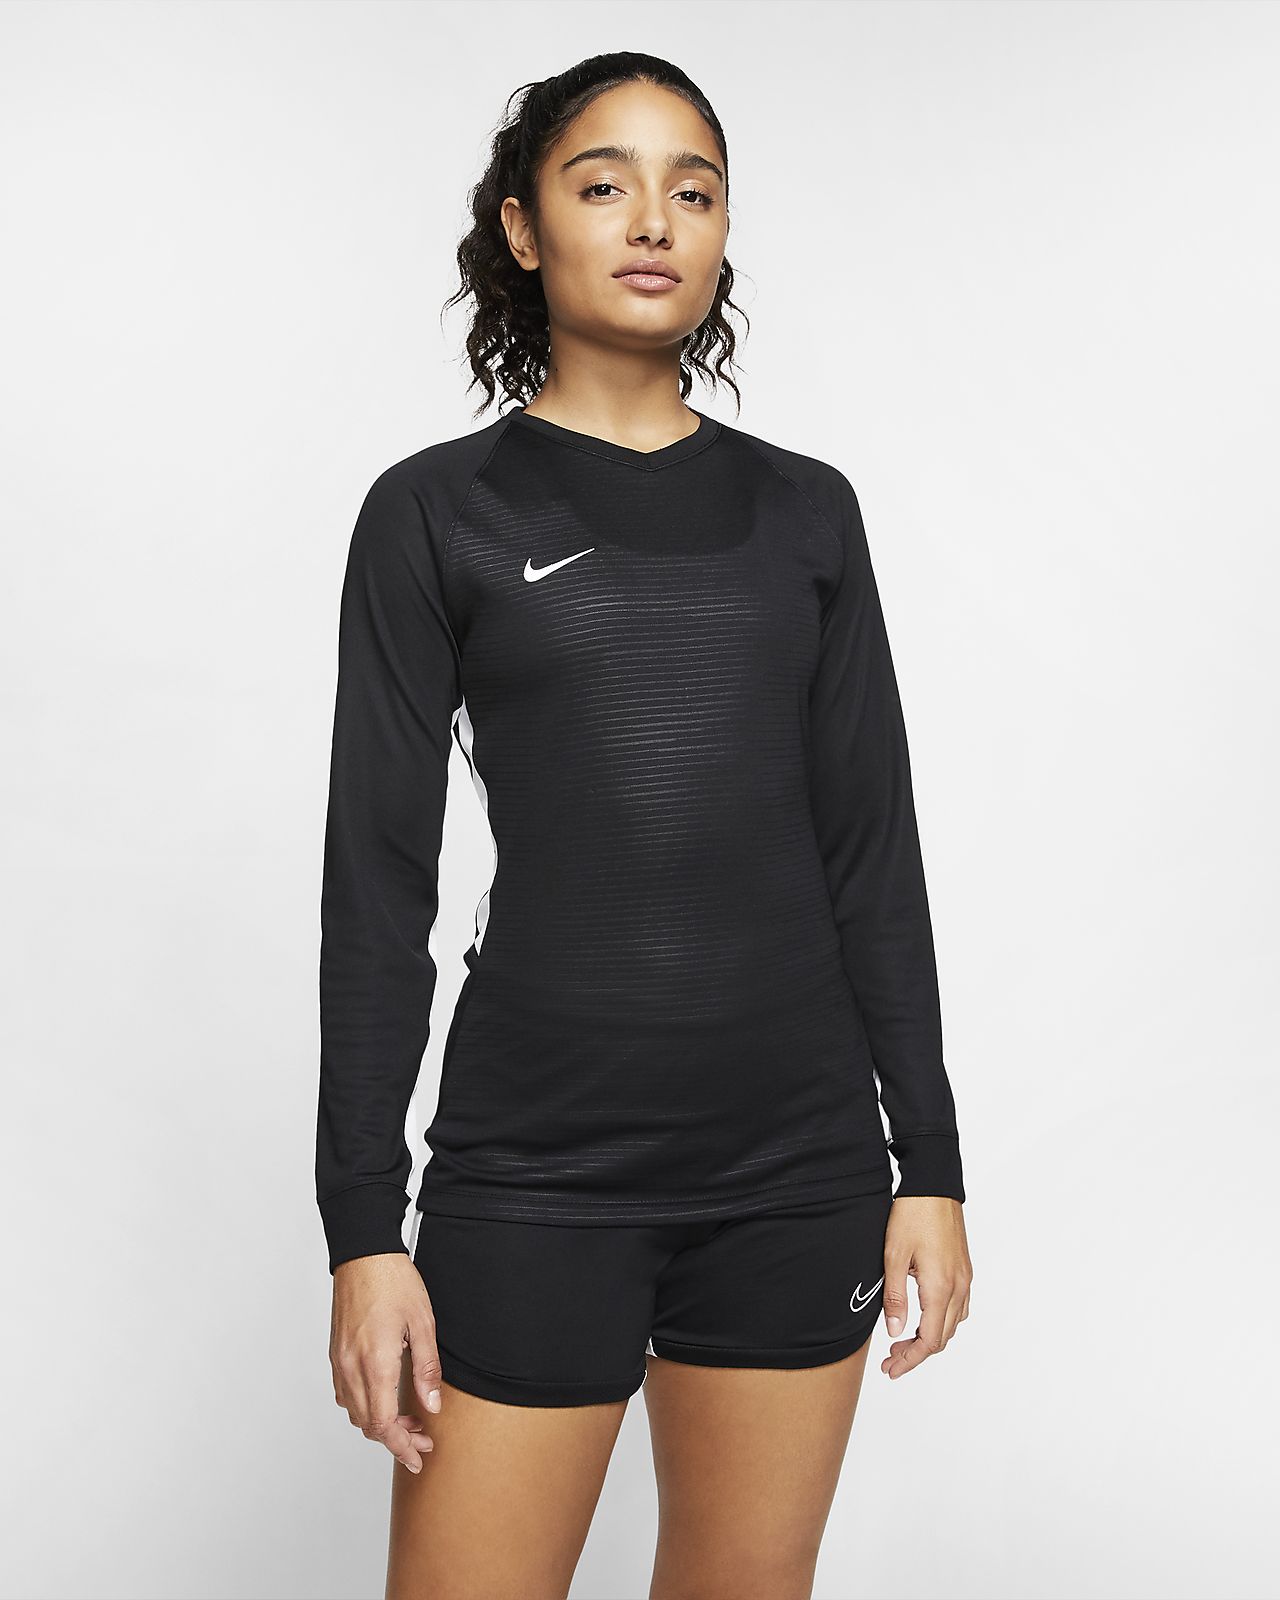 Download Nike Dri-FIT Tiempo Premier Women's Long-Sleeve Soccer ...